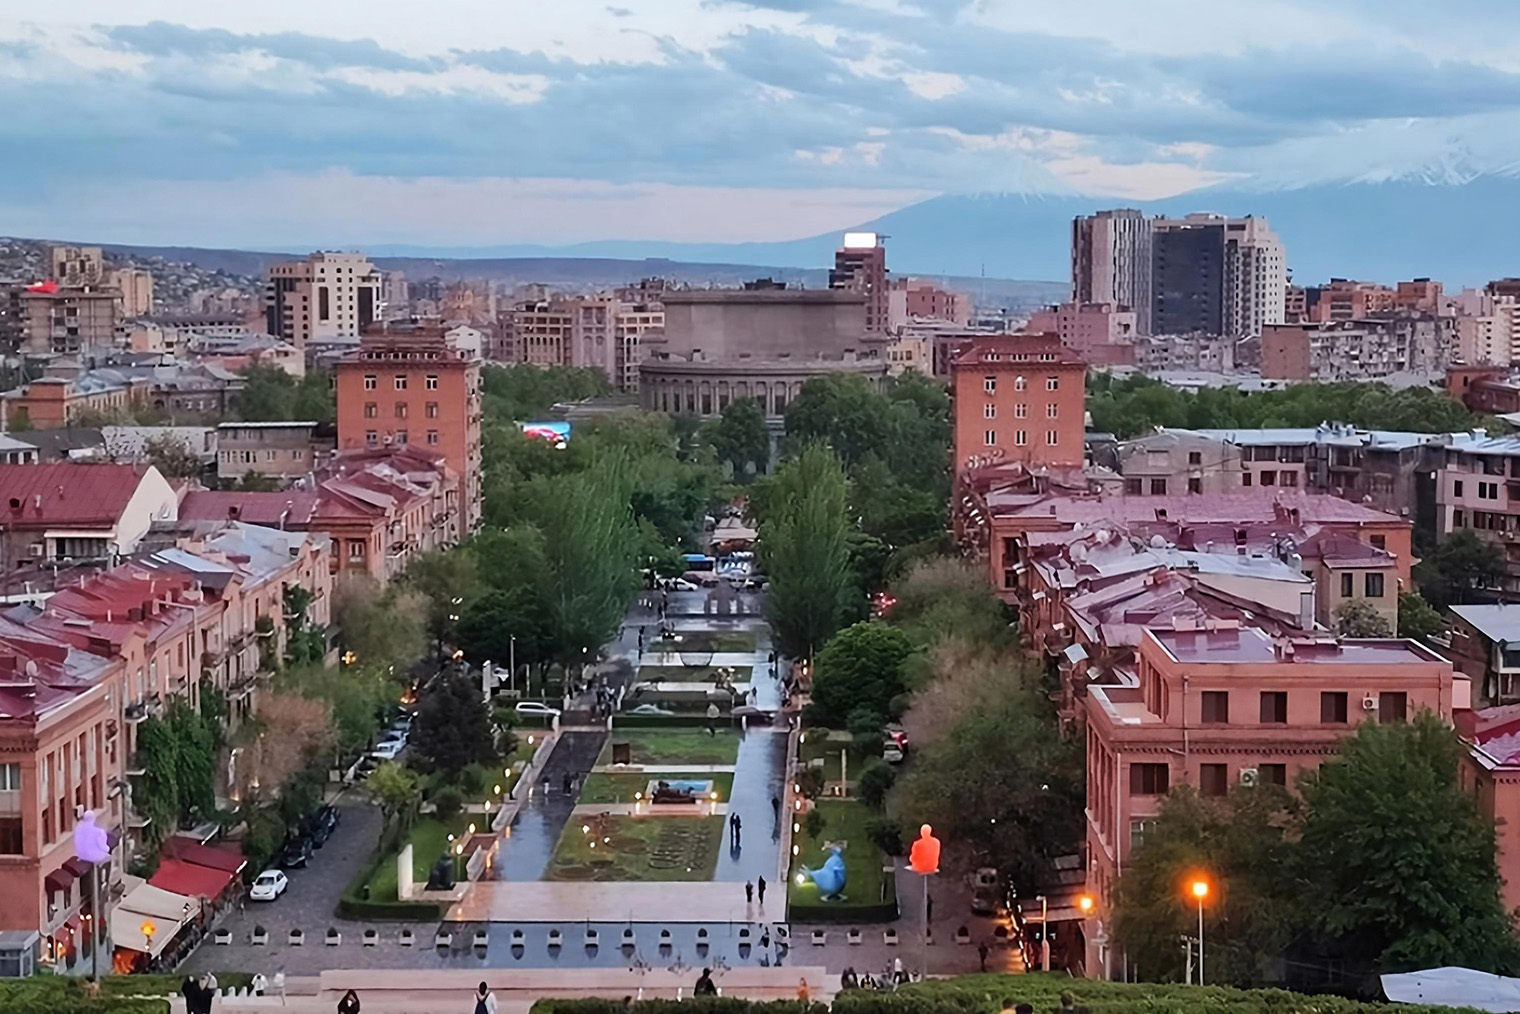 Еревану 2805 лет, он считается одним из древнейших городов мира. Ереван расположен в Араратской долине. Прямо из города открывается отличный вид на главный символ страны — гору Арарат